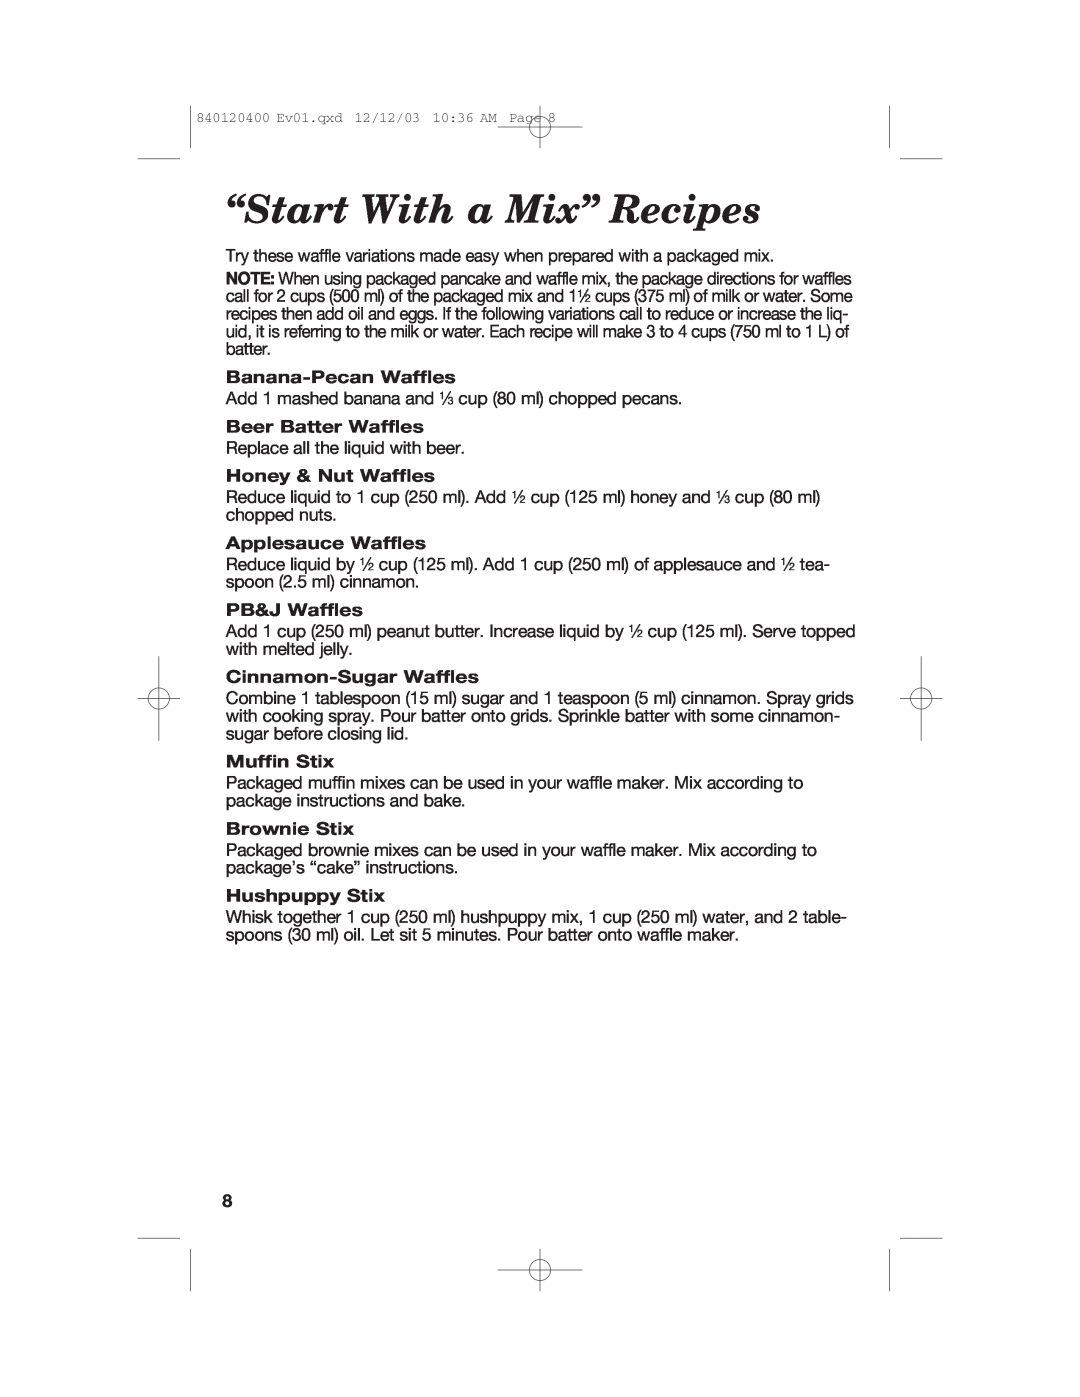 Hamilton Beach 26291 manual “Start With a Mix” Recipes, Banana-PecanWaffles, Beer Batter Waffles, Honey & Nut Waffles 